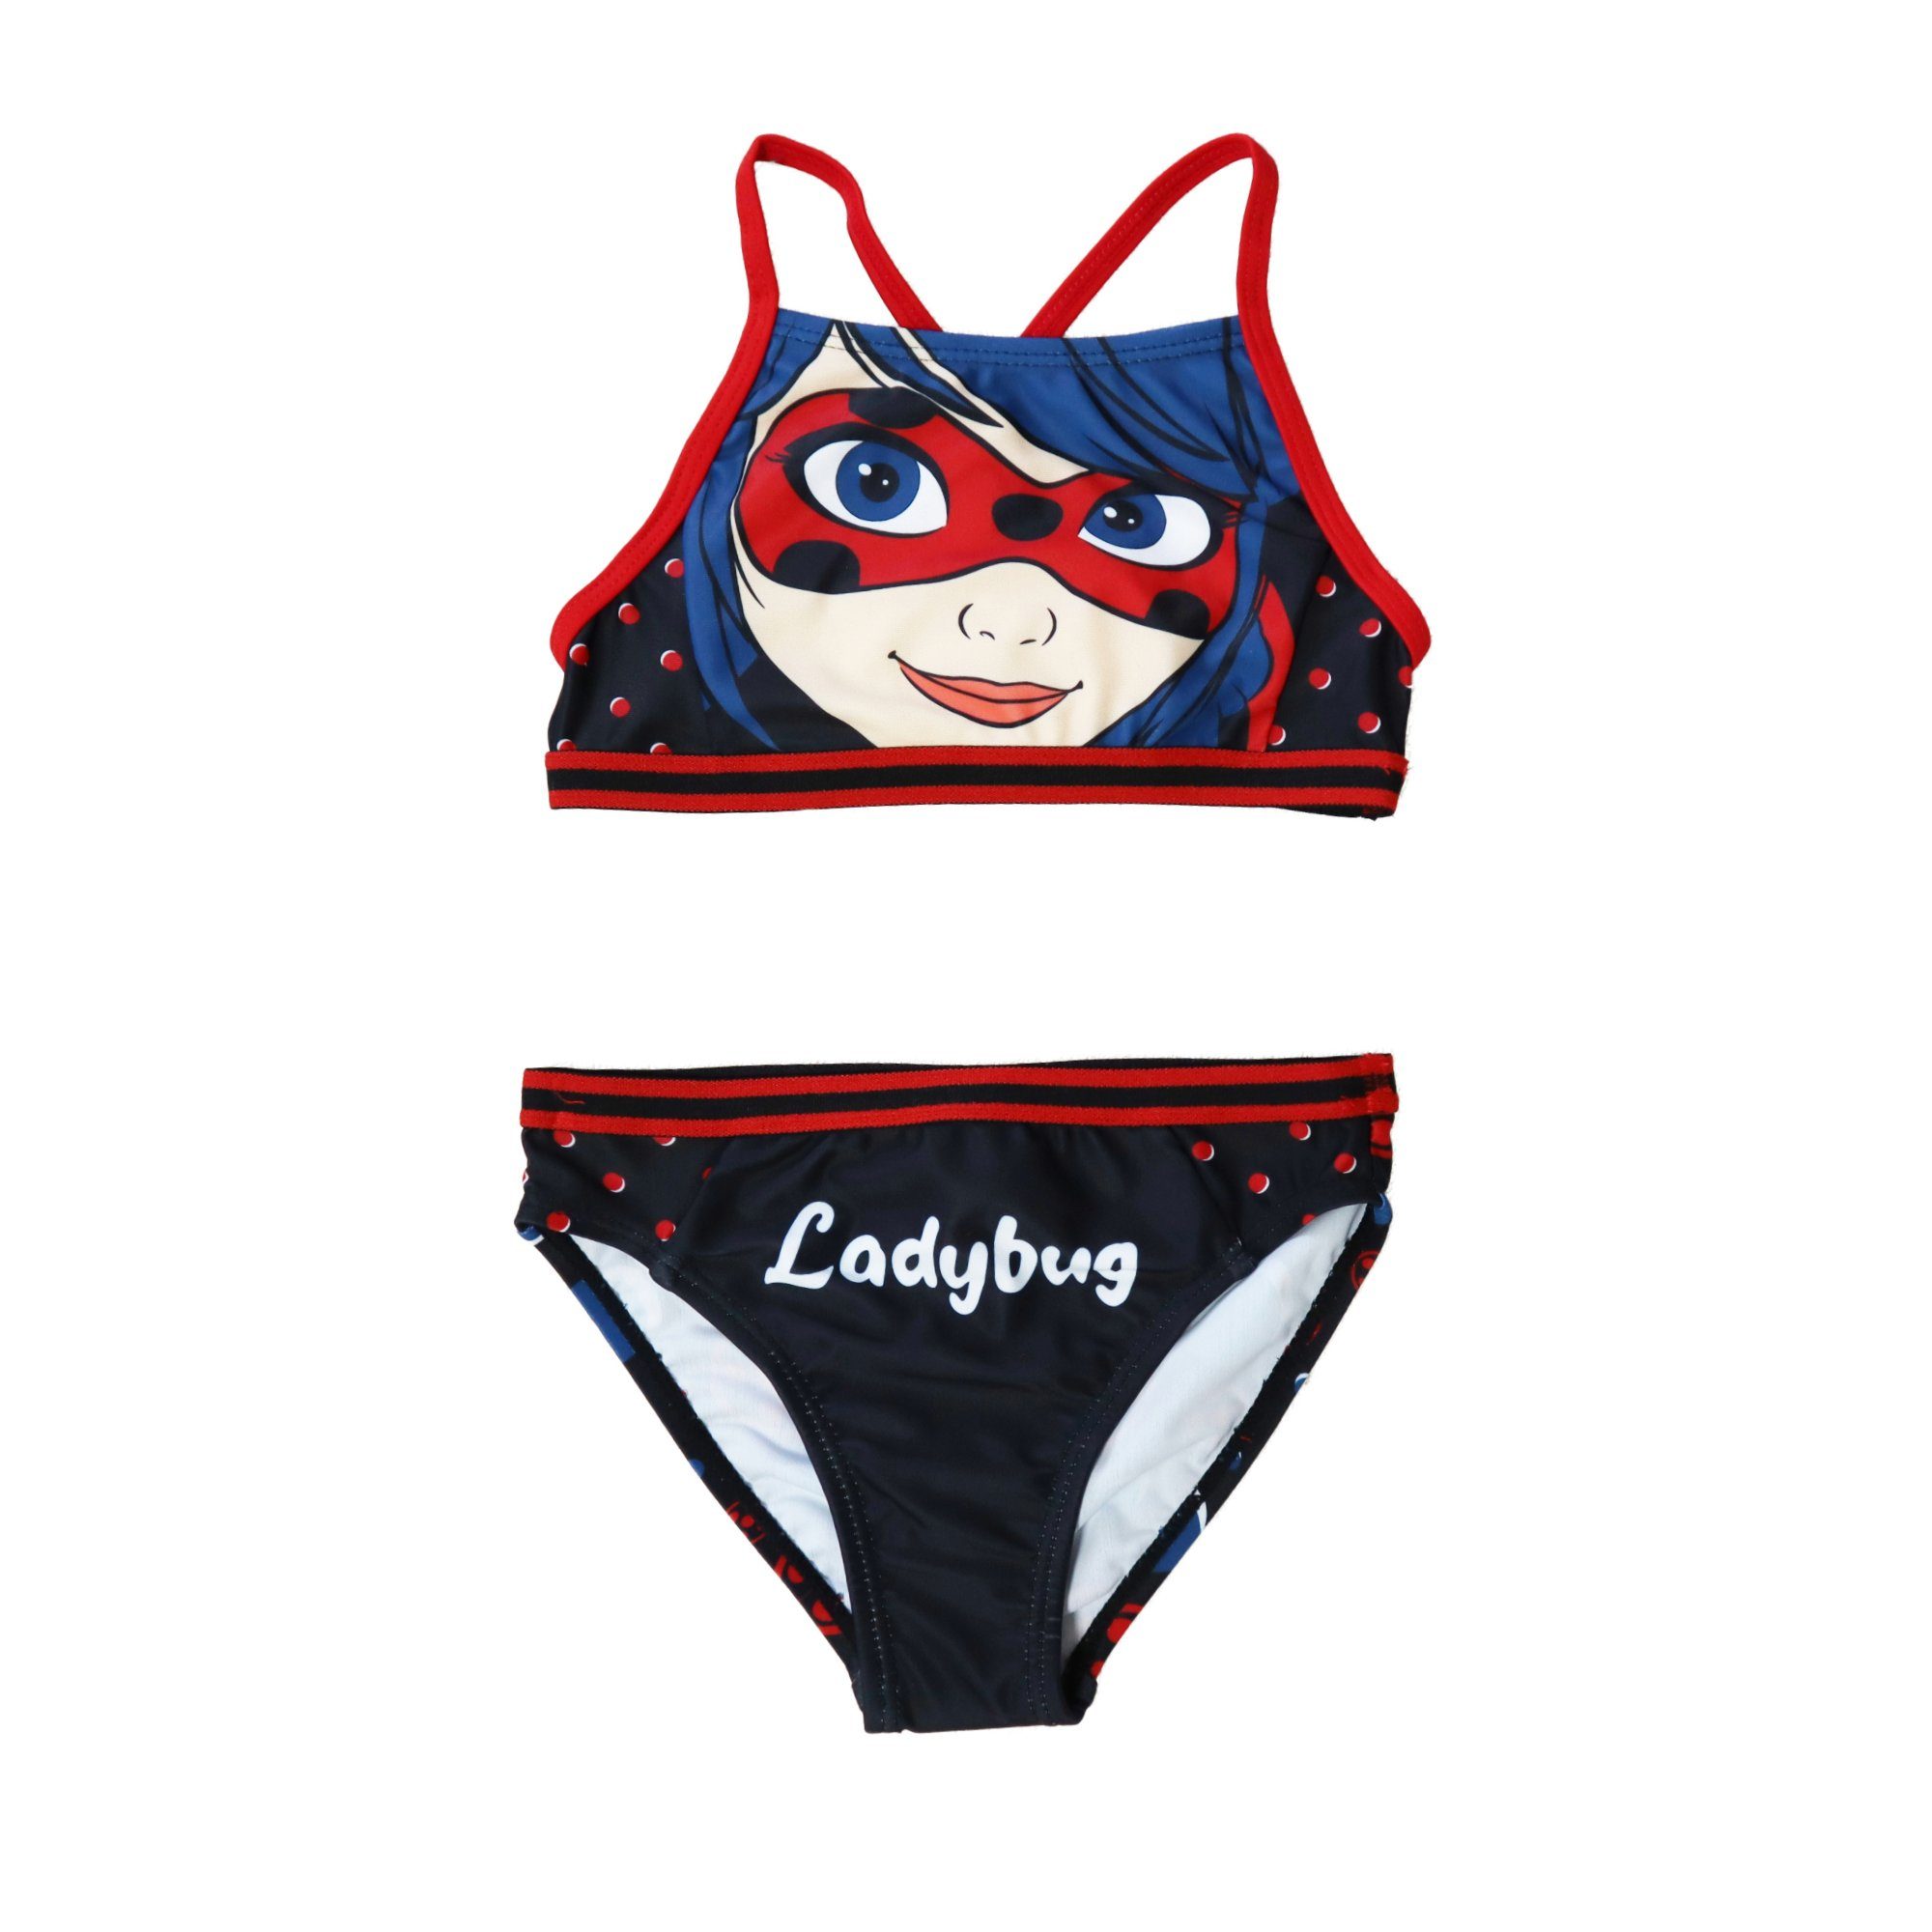 Miraculous - Ladybug Bustier-Bikini »Ladybug Kinder Bademode Mädchen  Schwimmanzug« Gr. 104 bis 128, Rot oder Schwarz